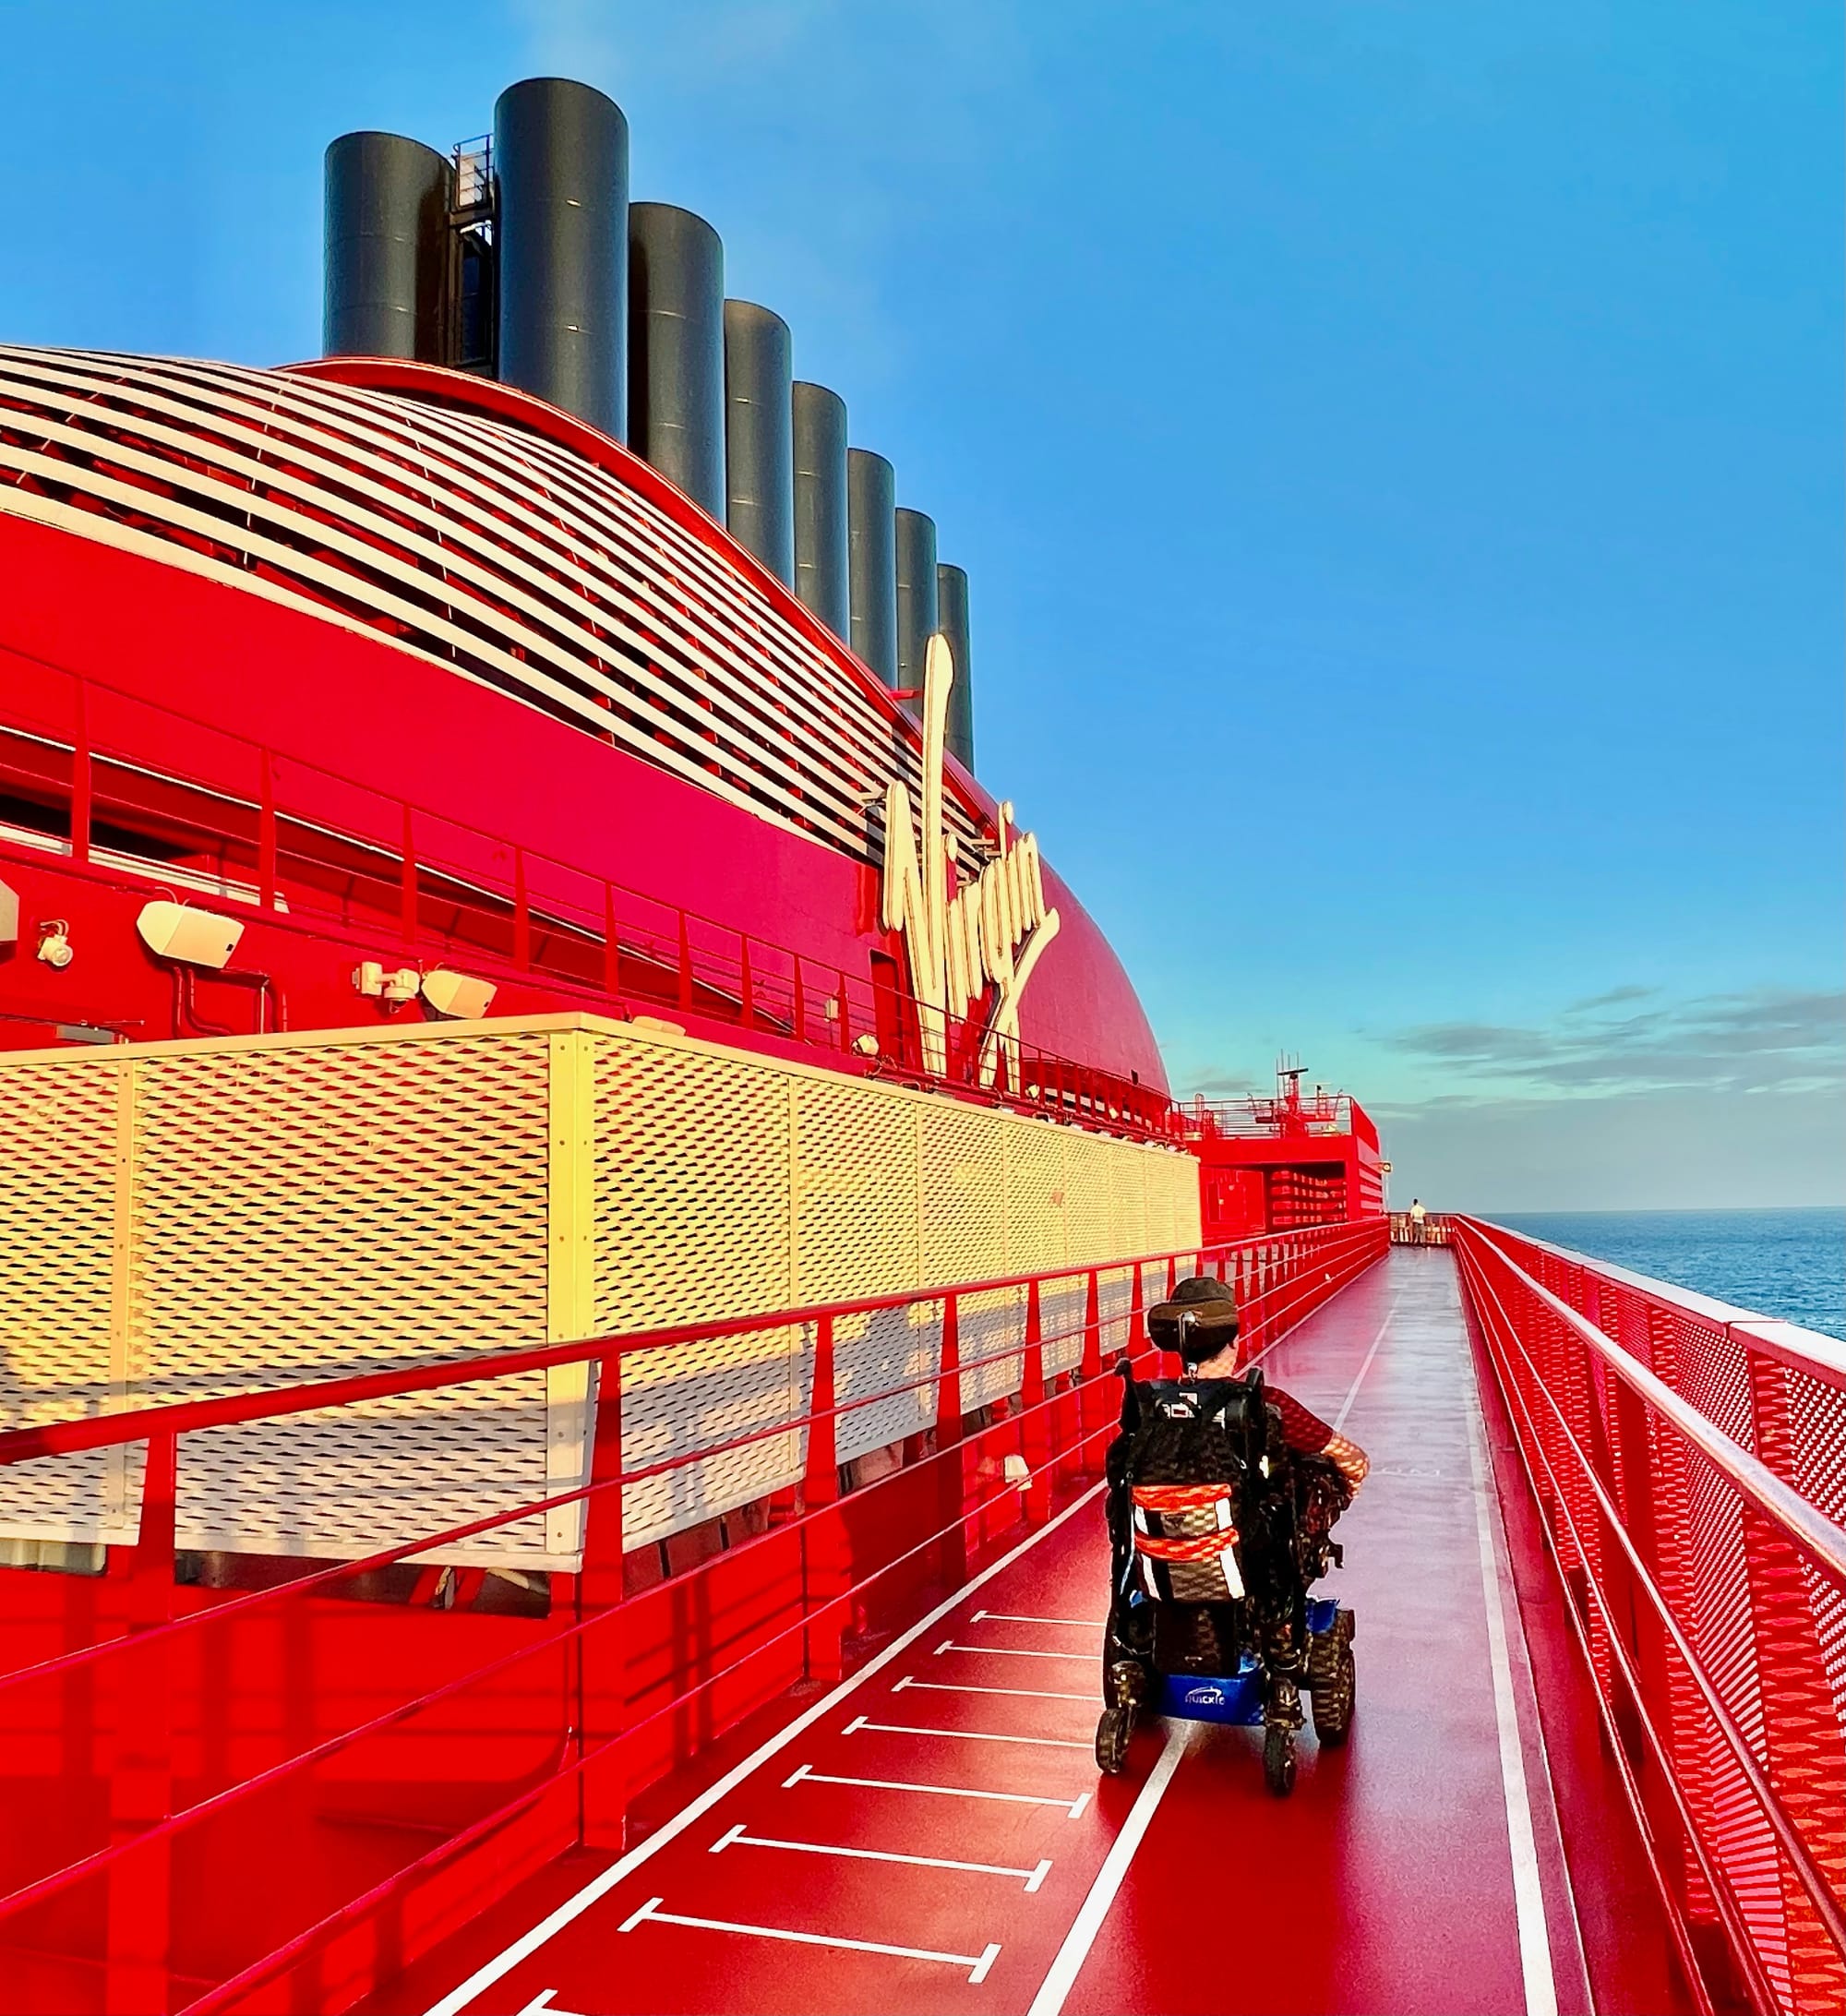 Wheelchair-user exploring the cruise ship with ocean views